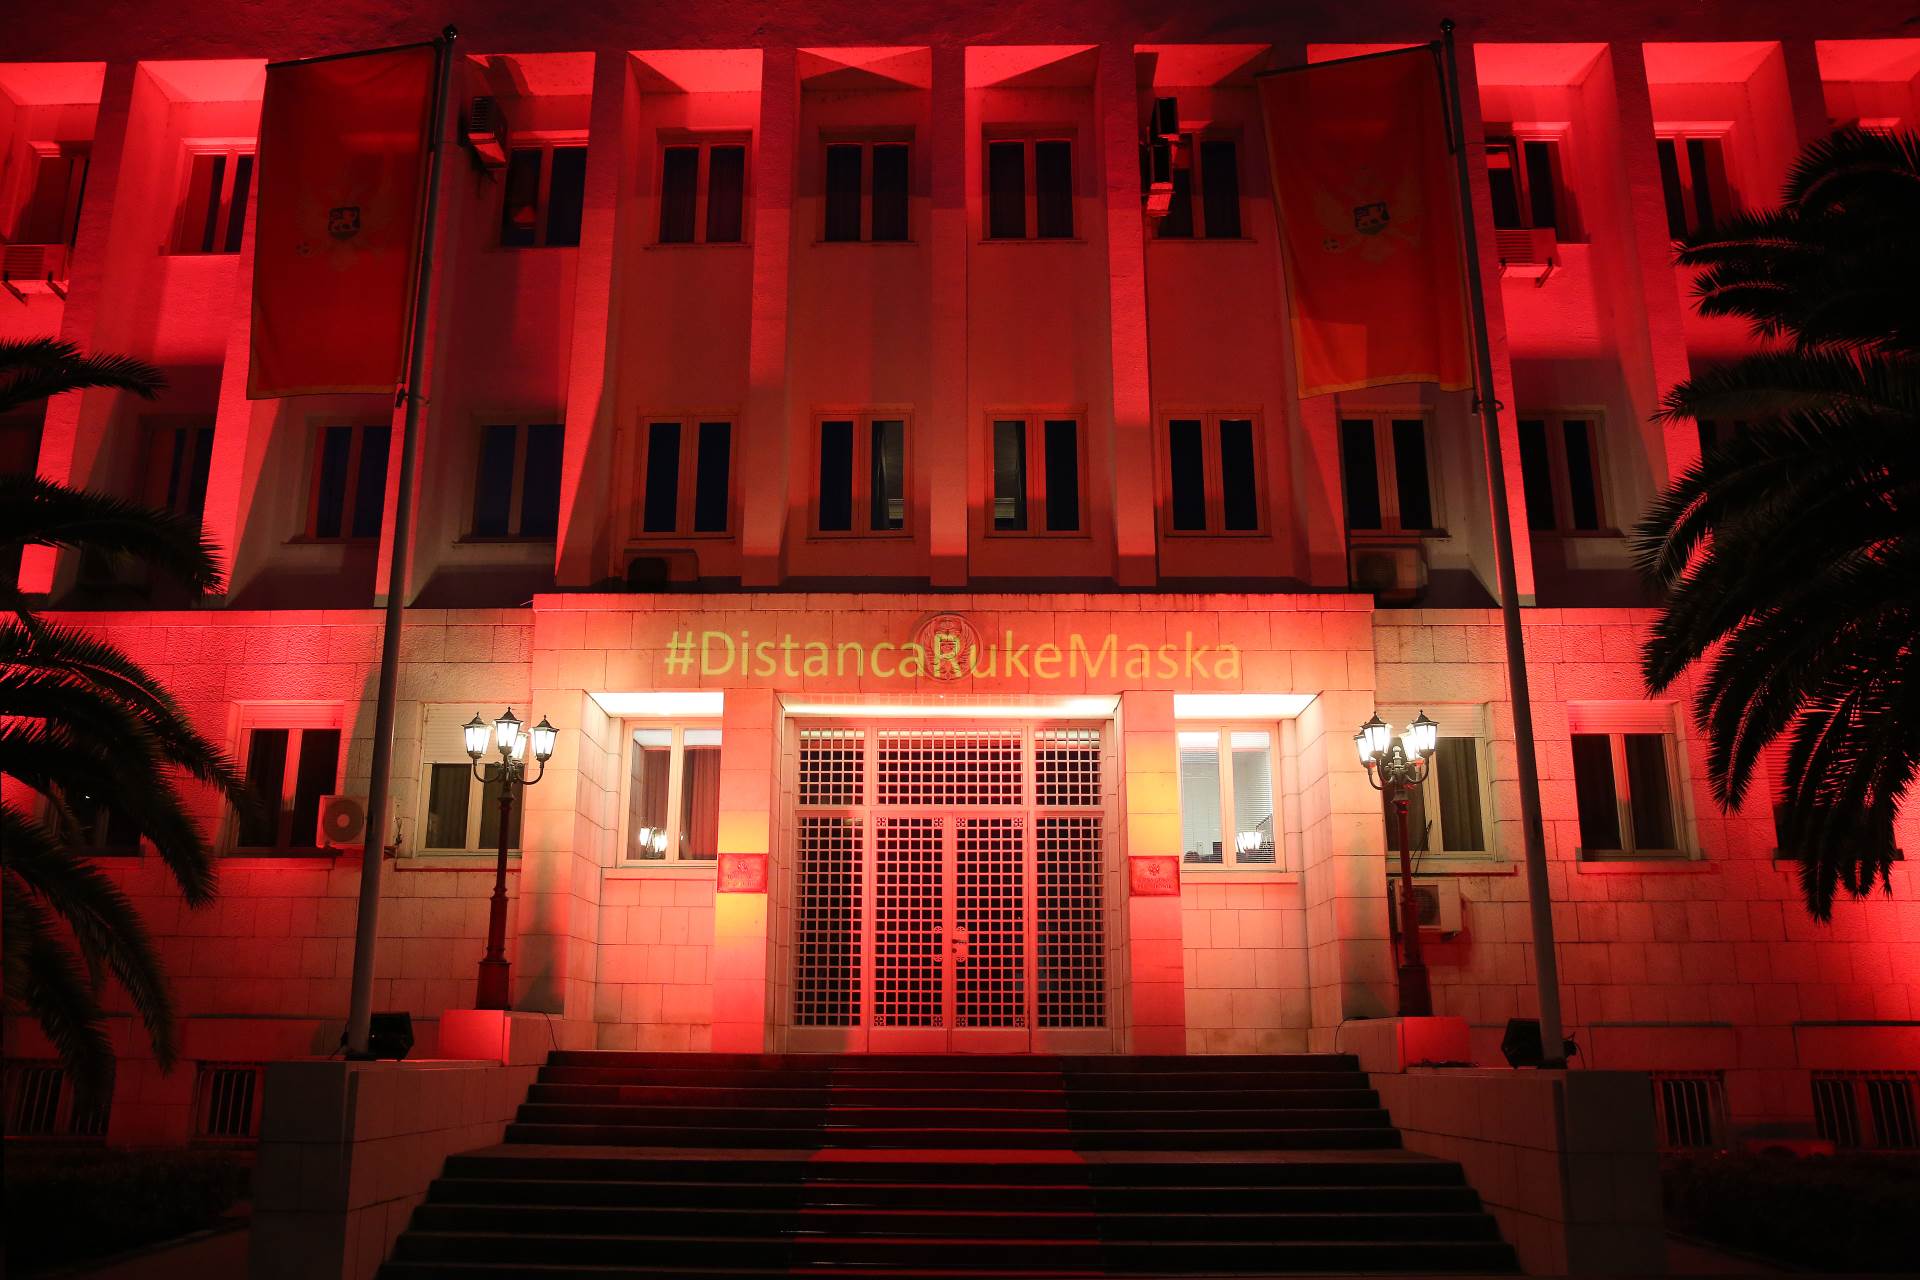  Osvijetljena zgrada Predsjedništva povodom godišnjice proglašenja pandemije 